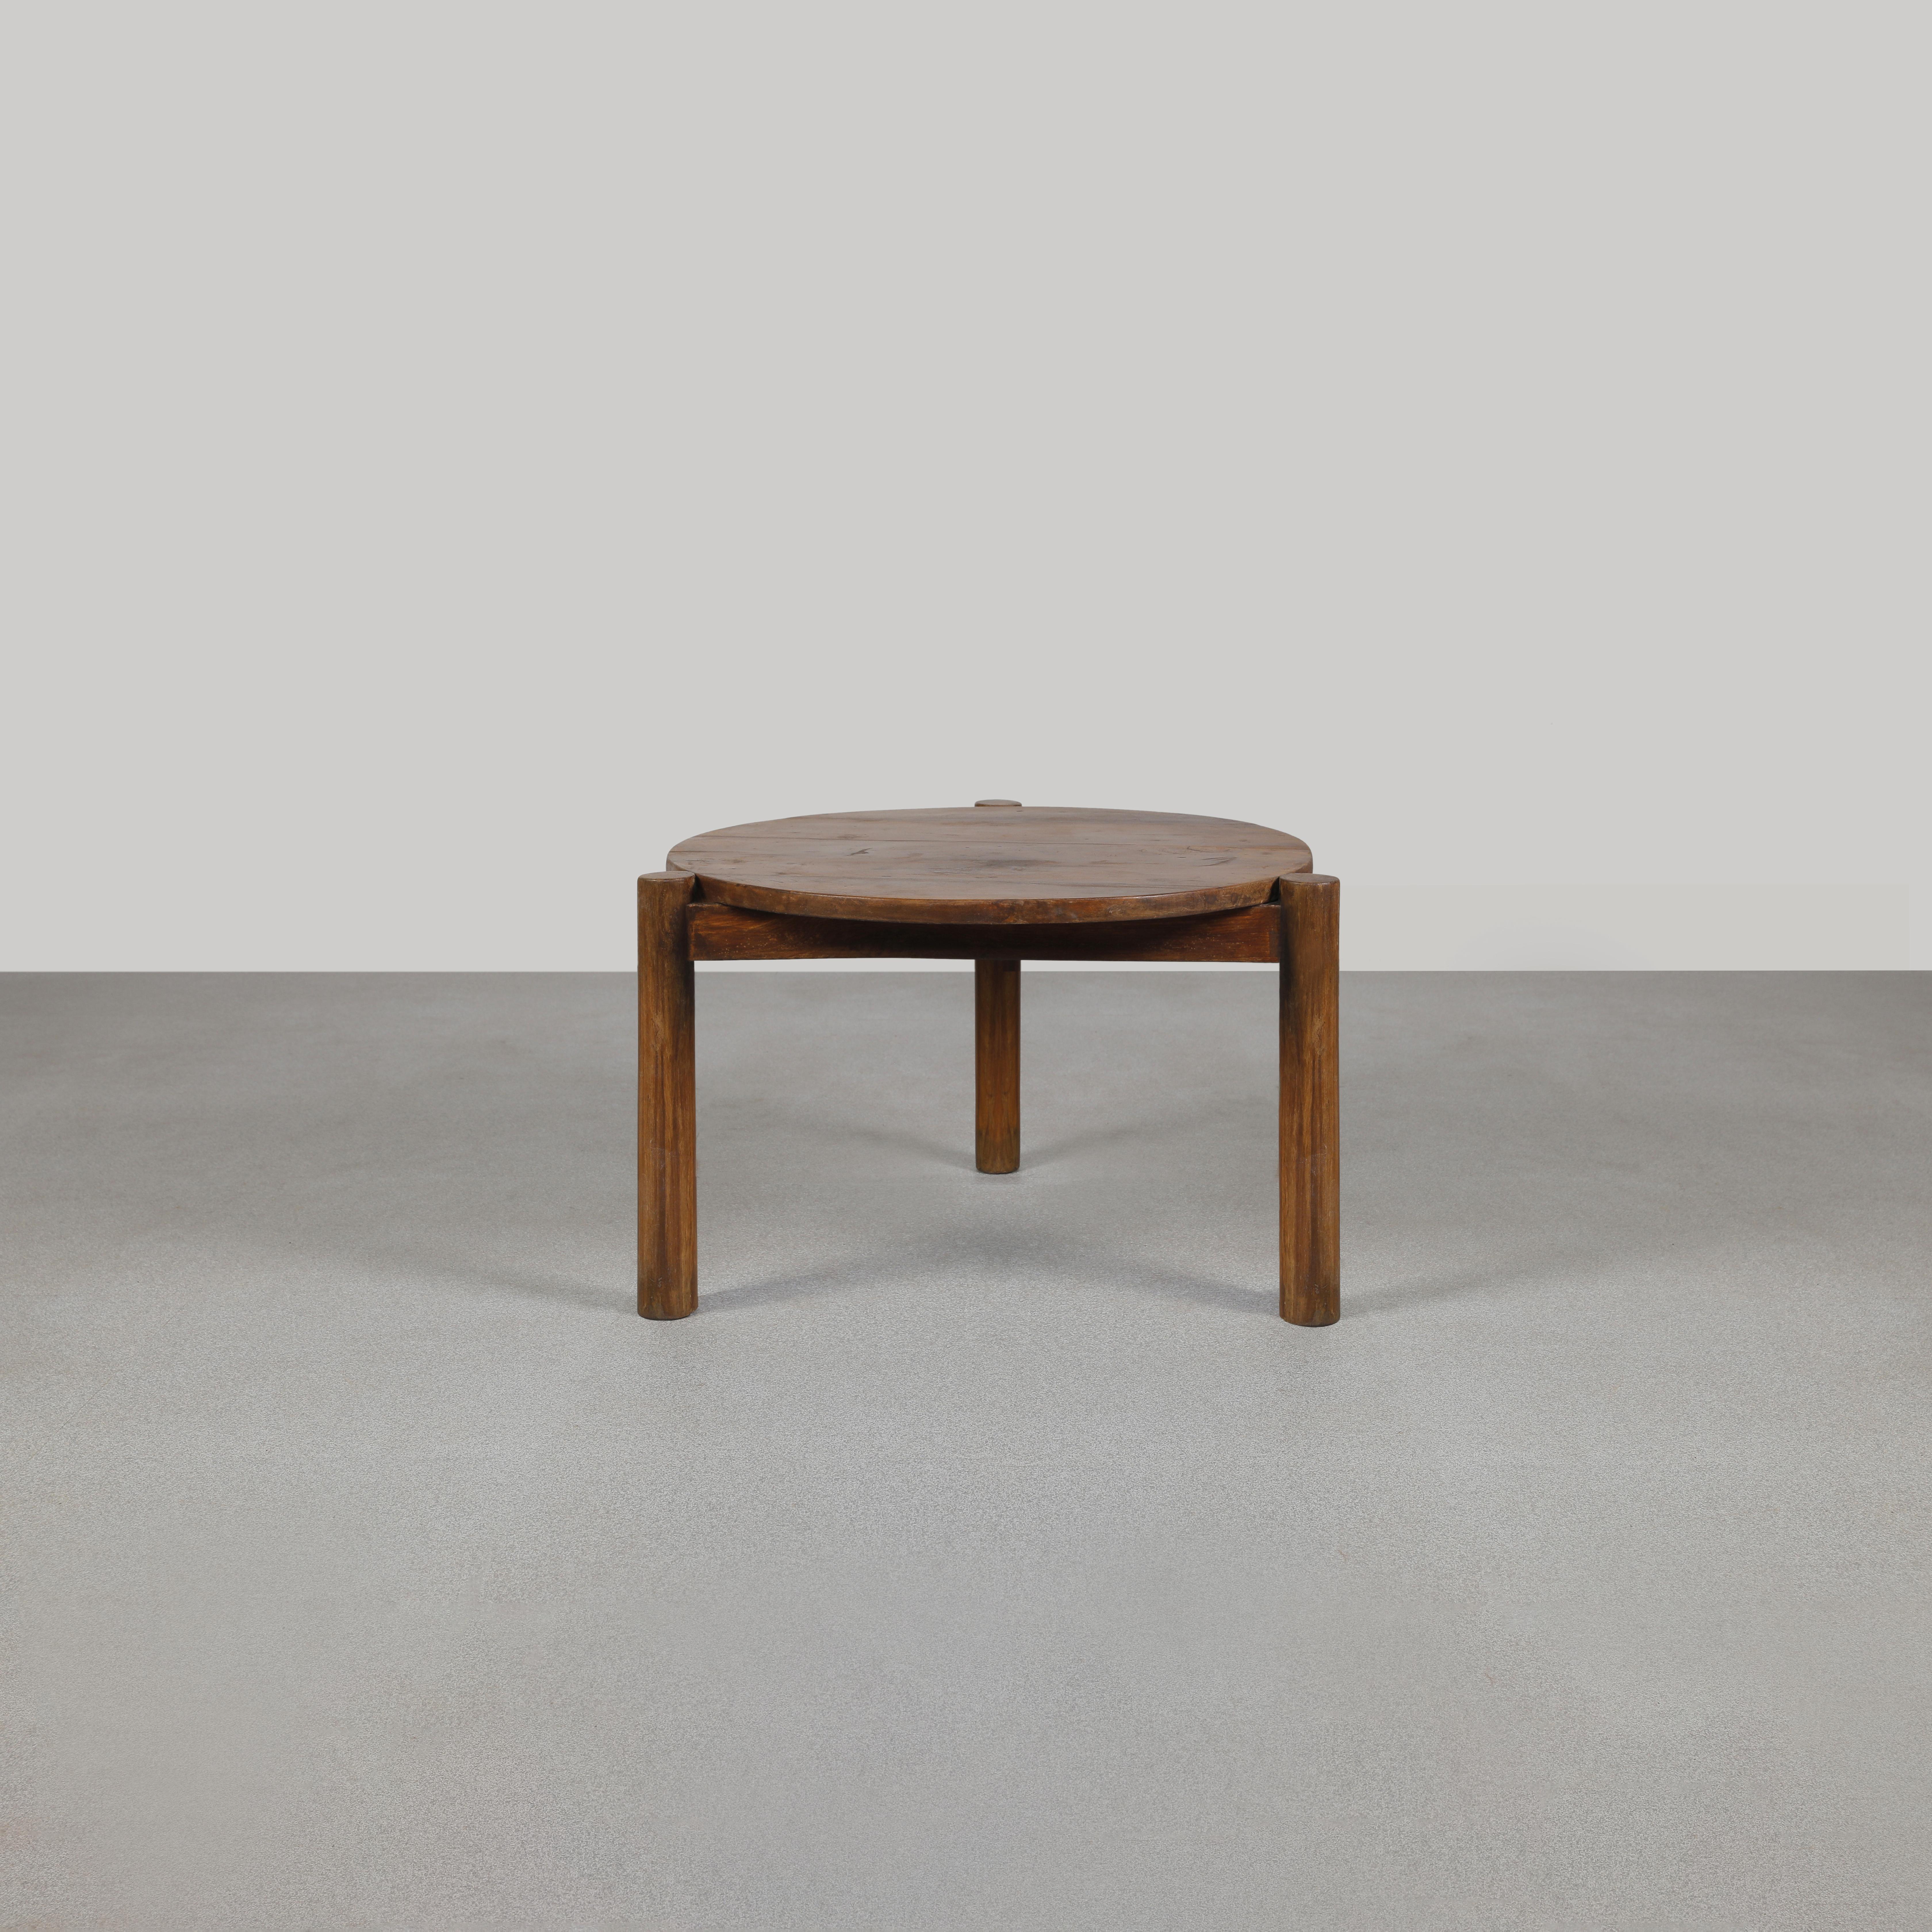 Dieser niedrige runde Tisch ist eine Design-Ikone. Es ist roh in seiner Einfachheit zeigt es ein leicht patiniertes Material. Die Form ist schön zerbrechlich und hat eine wunderbare Farbe. Wir restaurieren sie nicht allzu sehr. So bewahren wir so